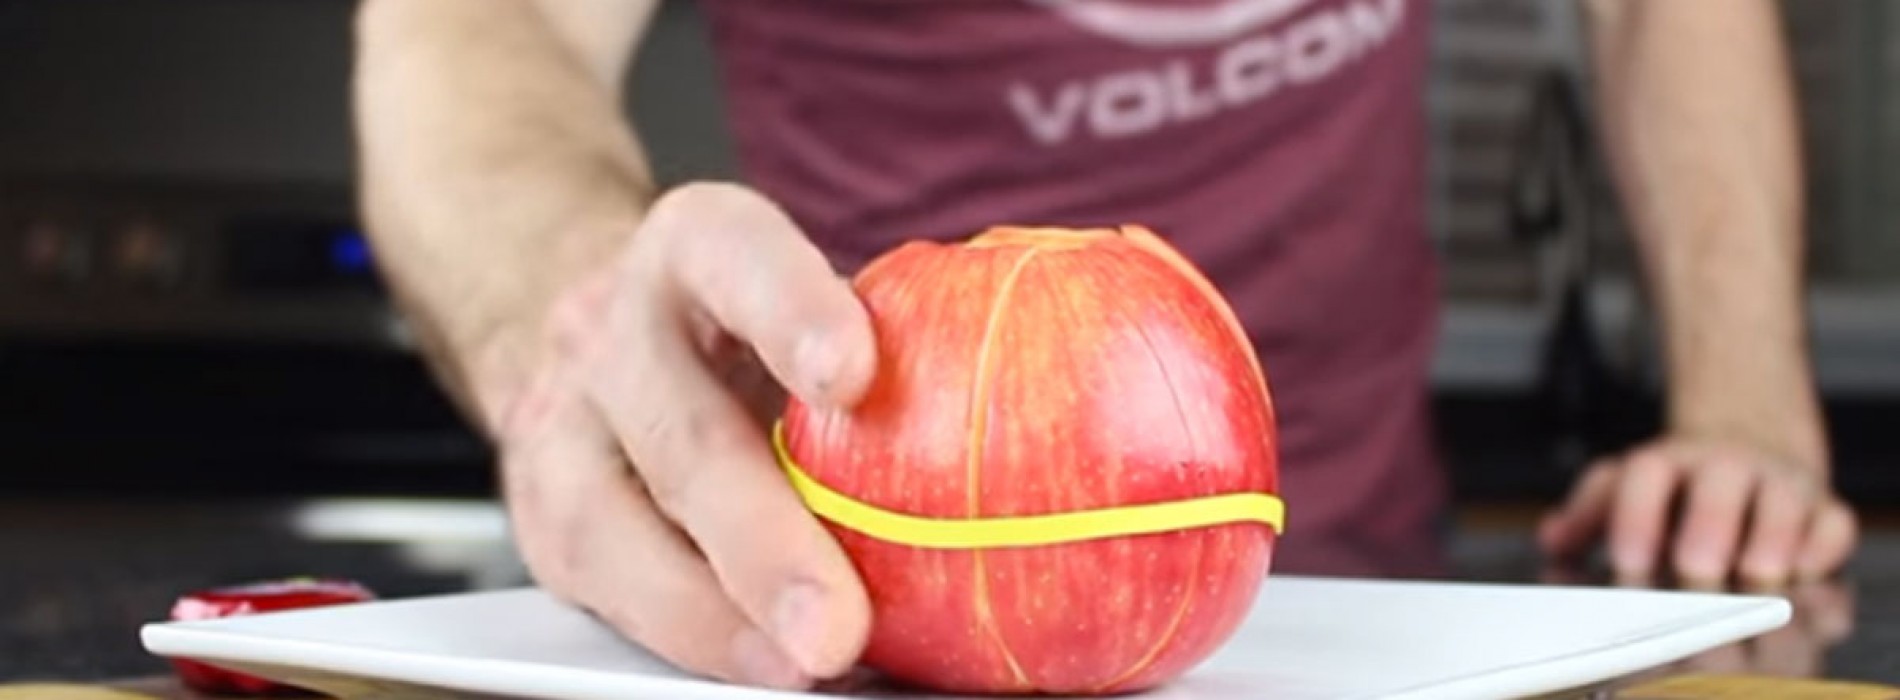 Hij wikkelt een rubberen band om zijn appel, de reden? Deze tips zijn geweldig!